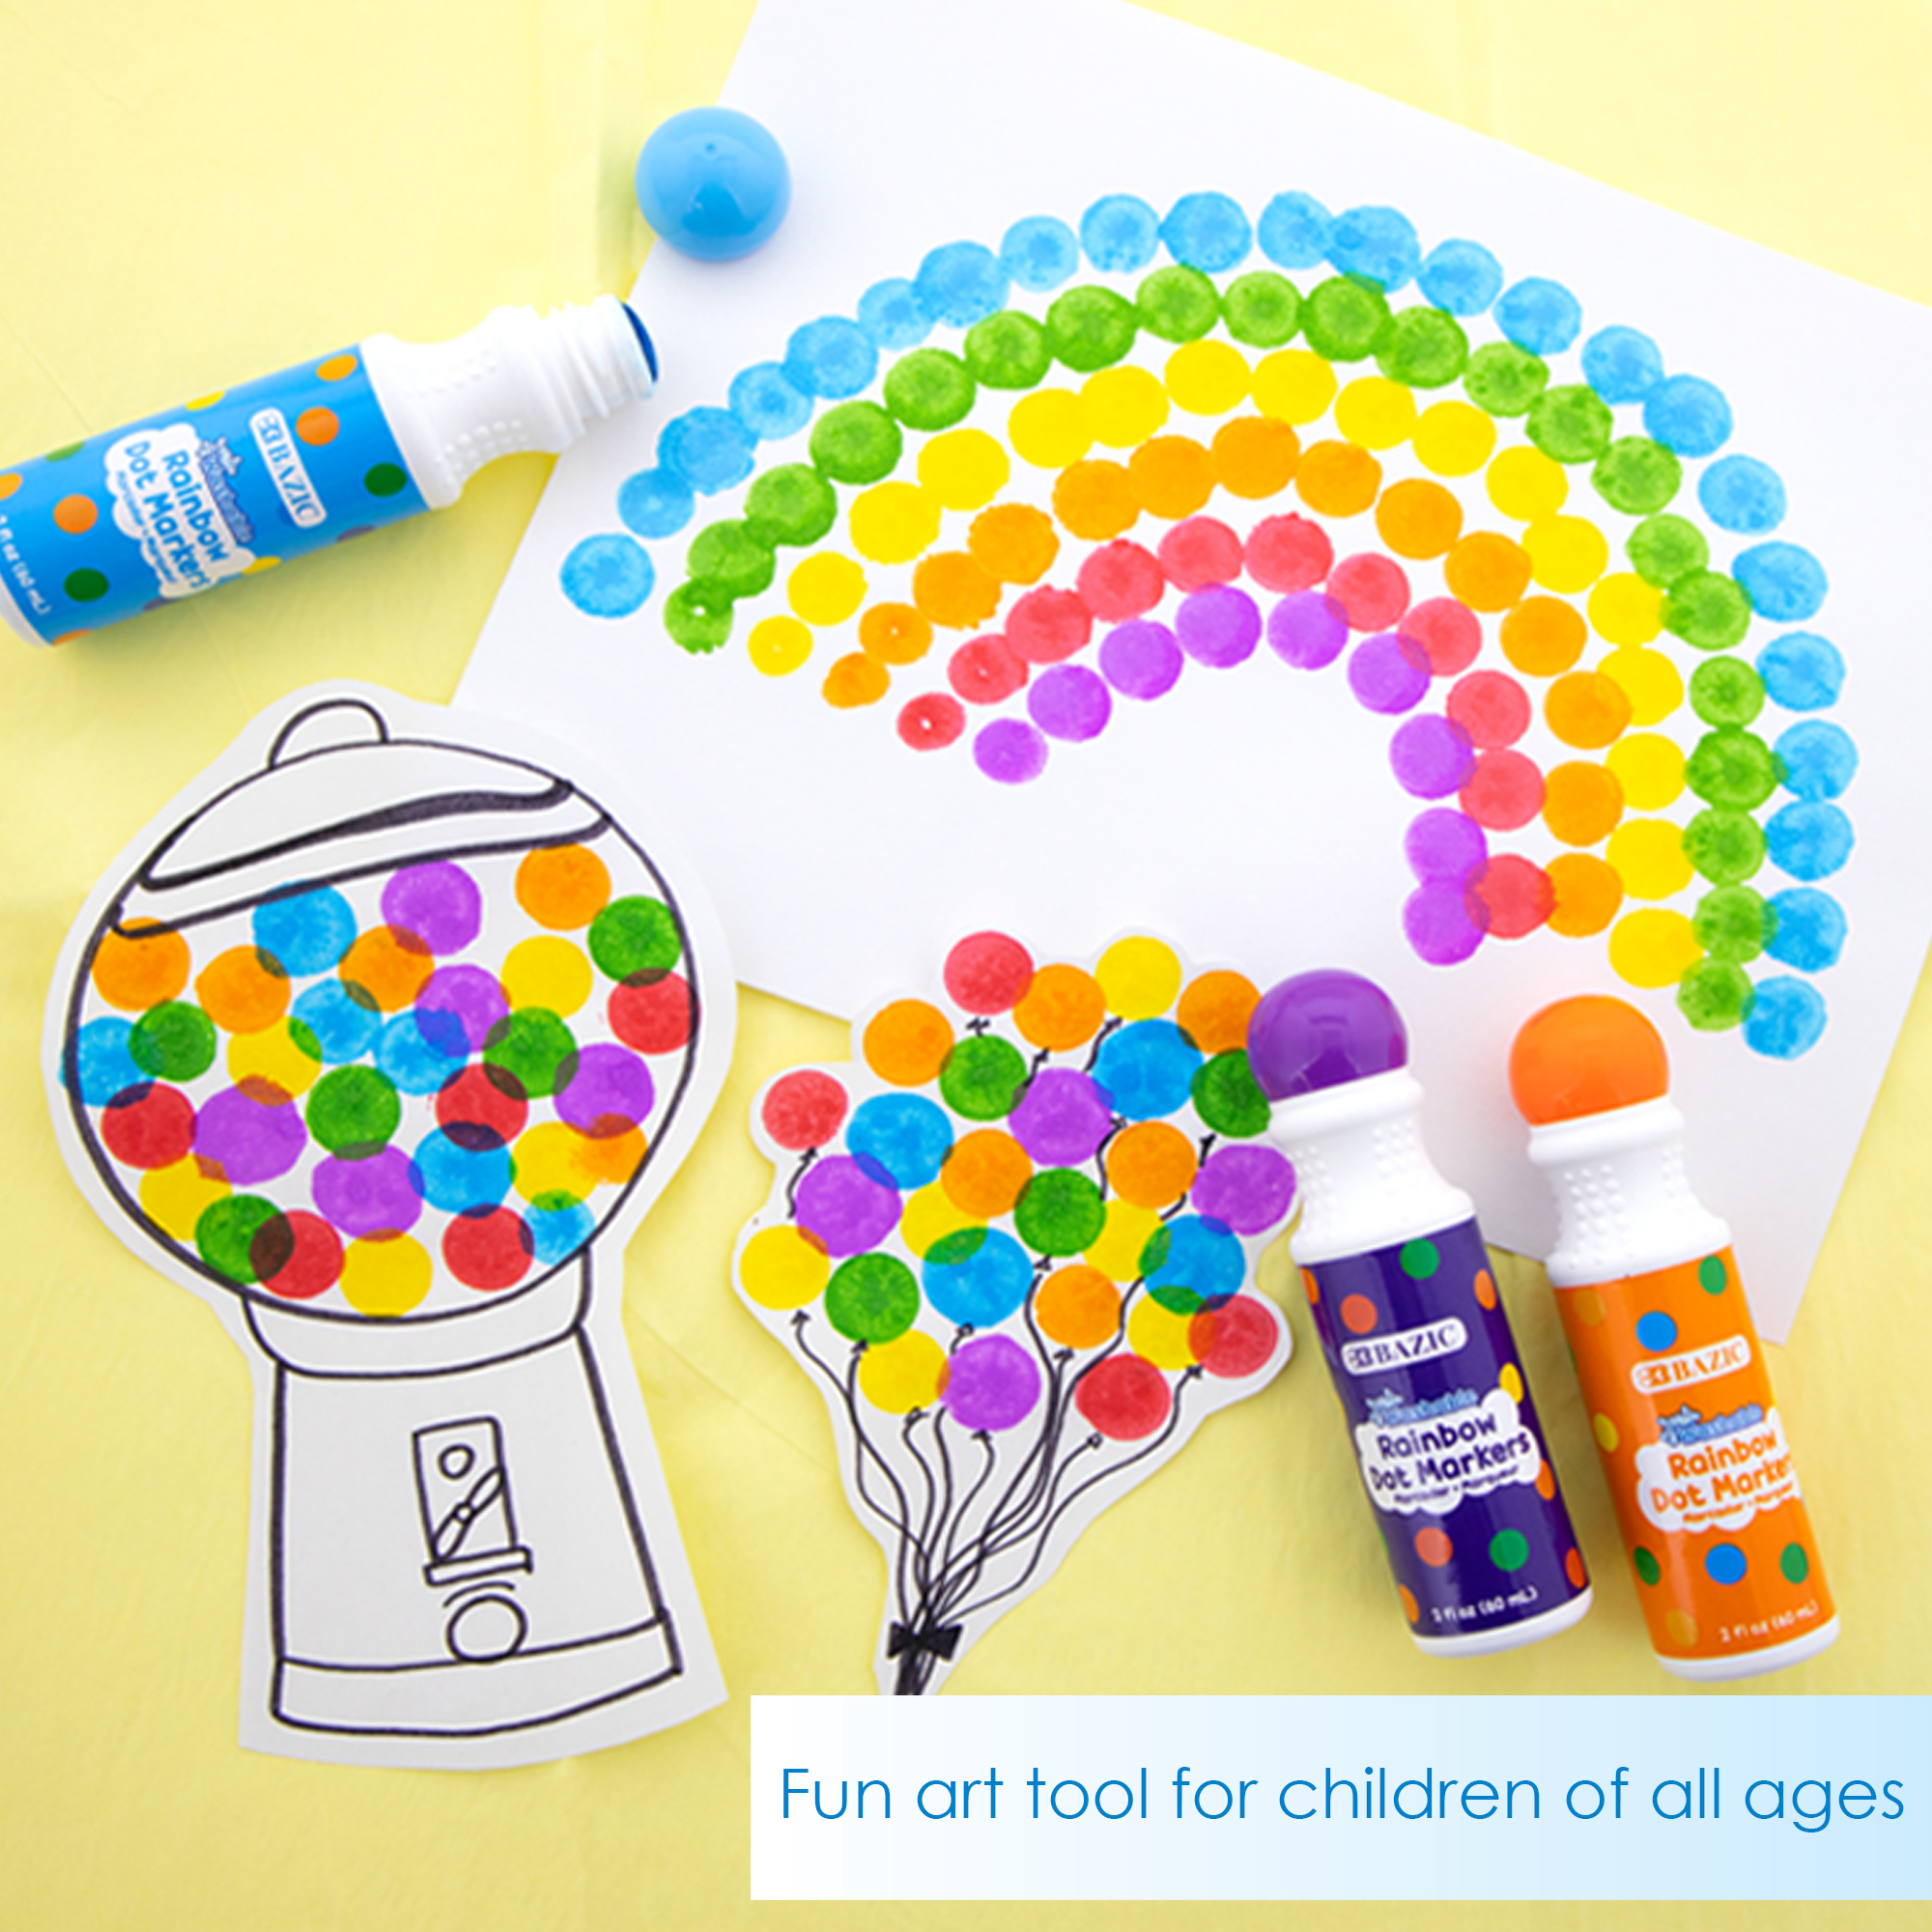 Brilliant Dot Markers by Do a Dot Art – Mochi Kids